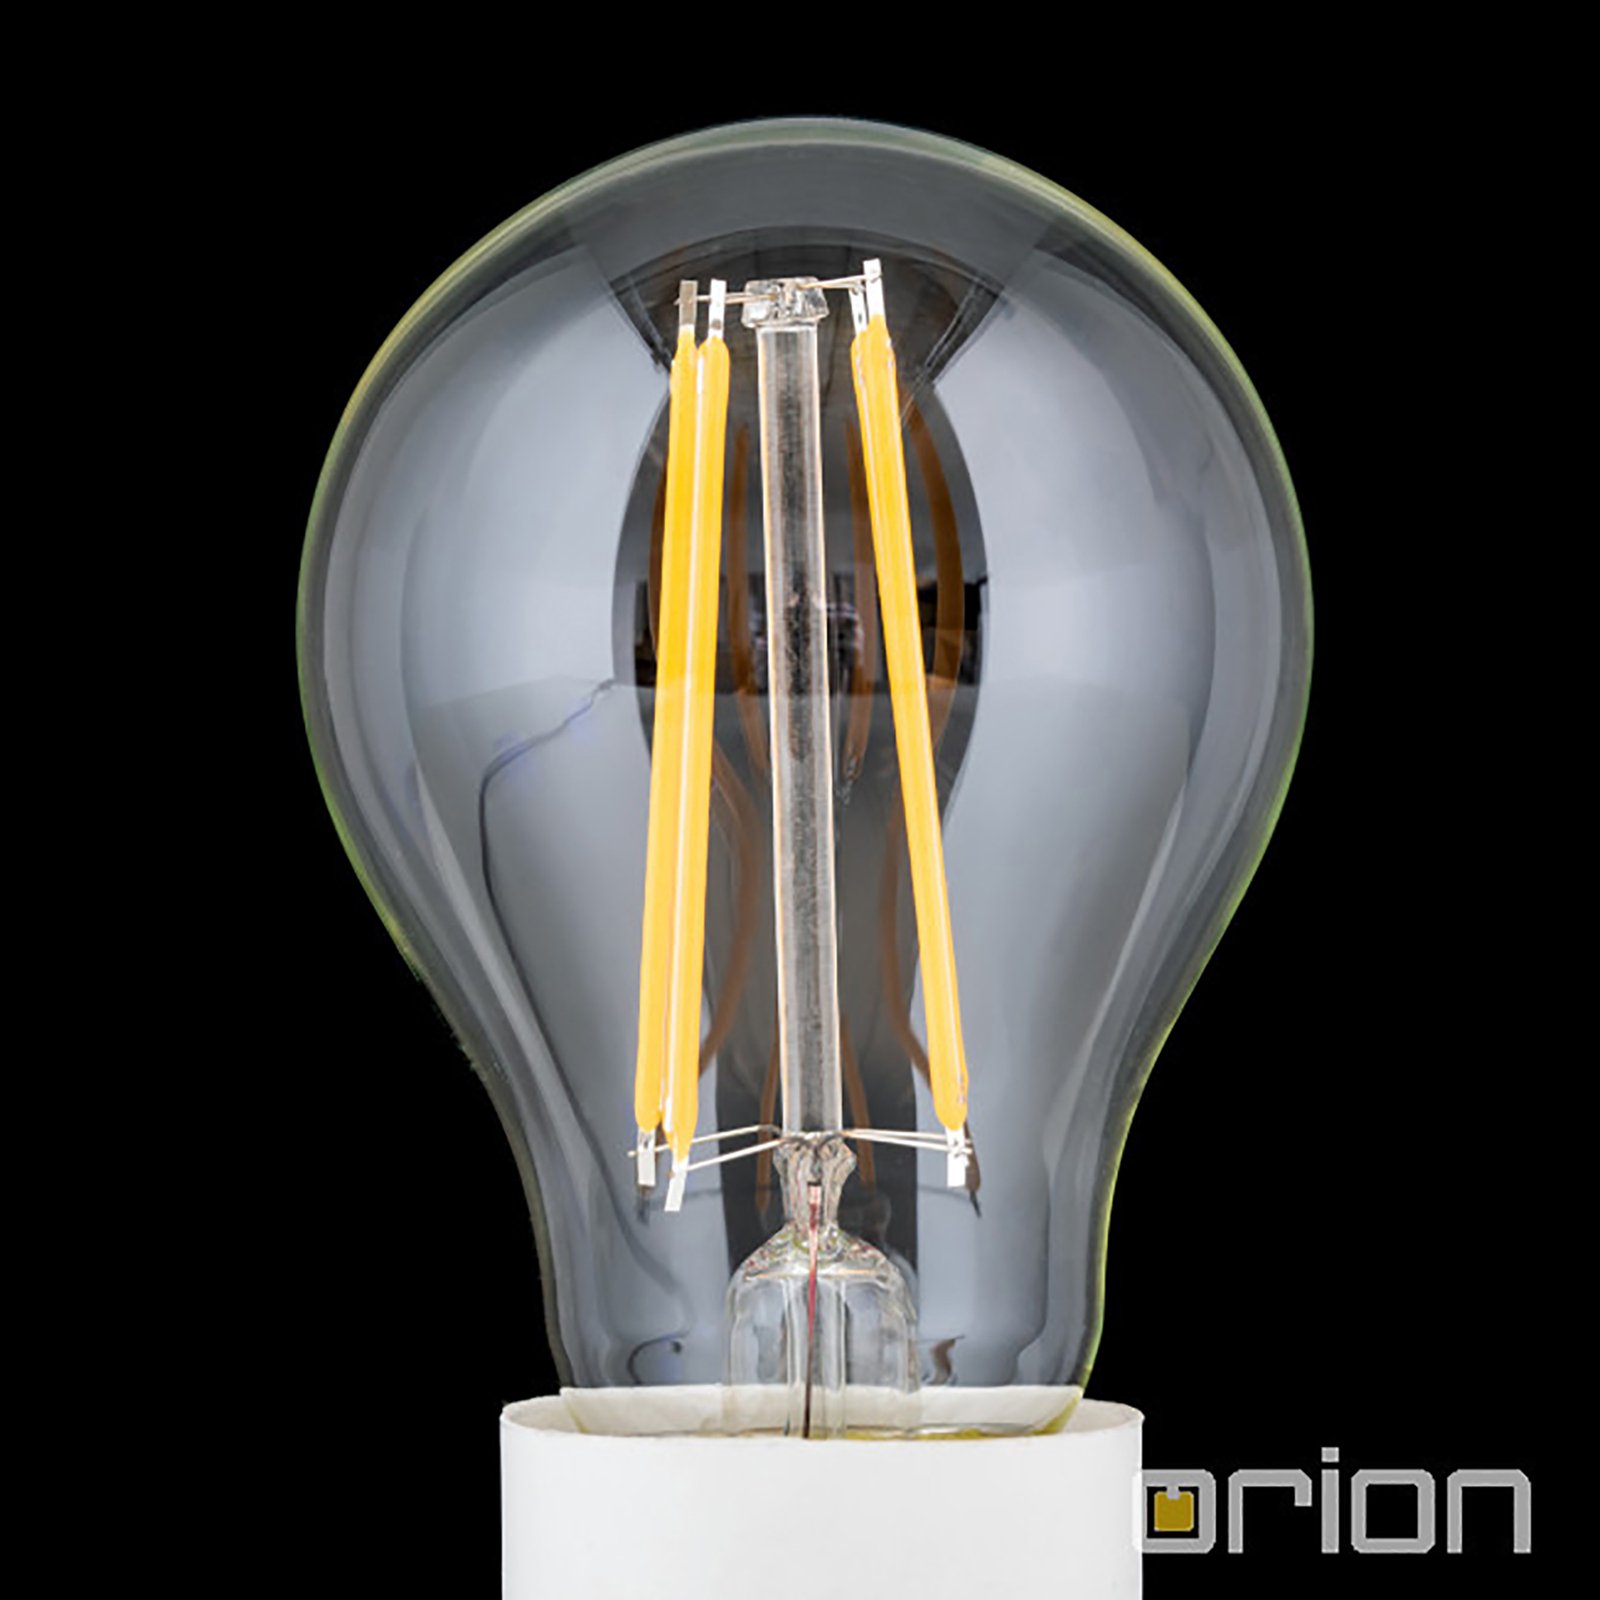 Ampoule LED E27 10 W 2 700 K filament dimmable